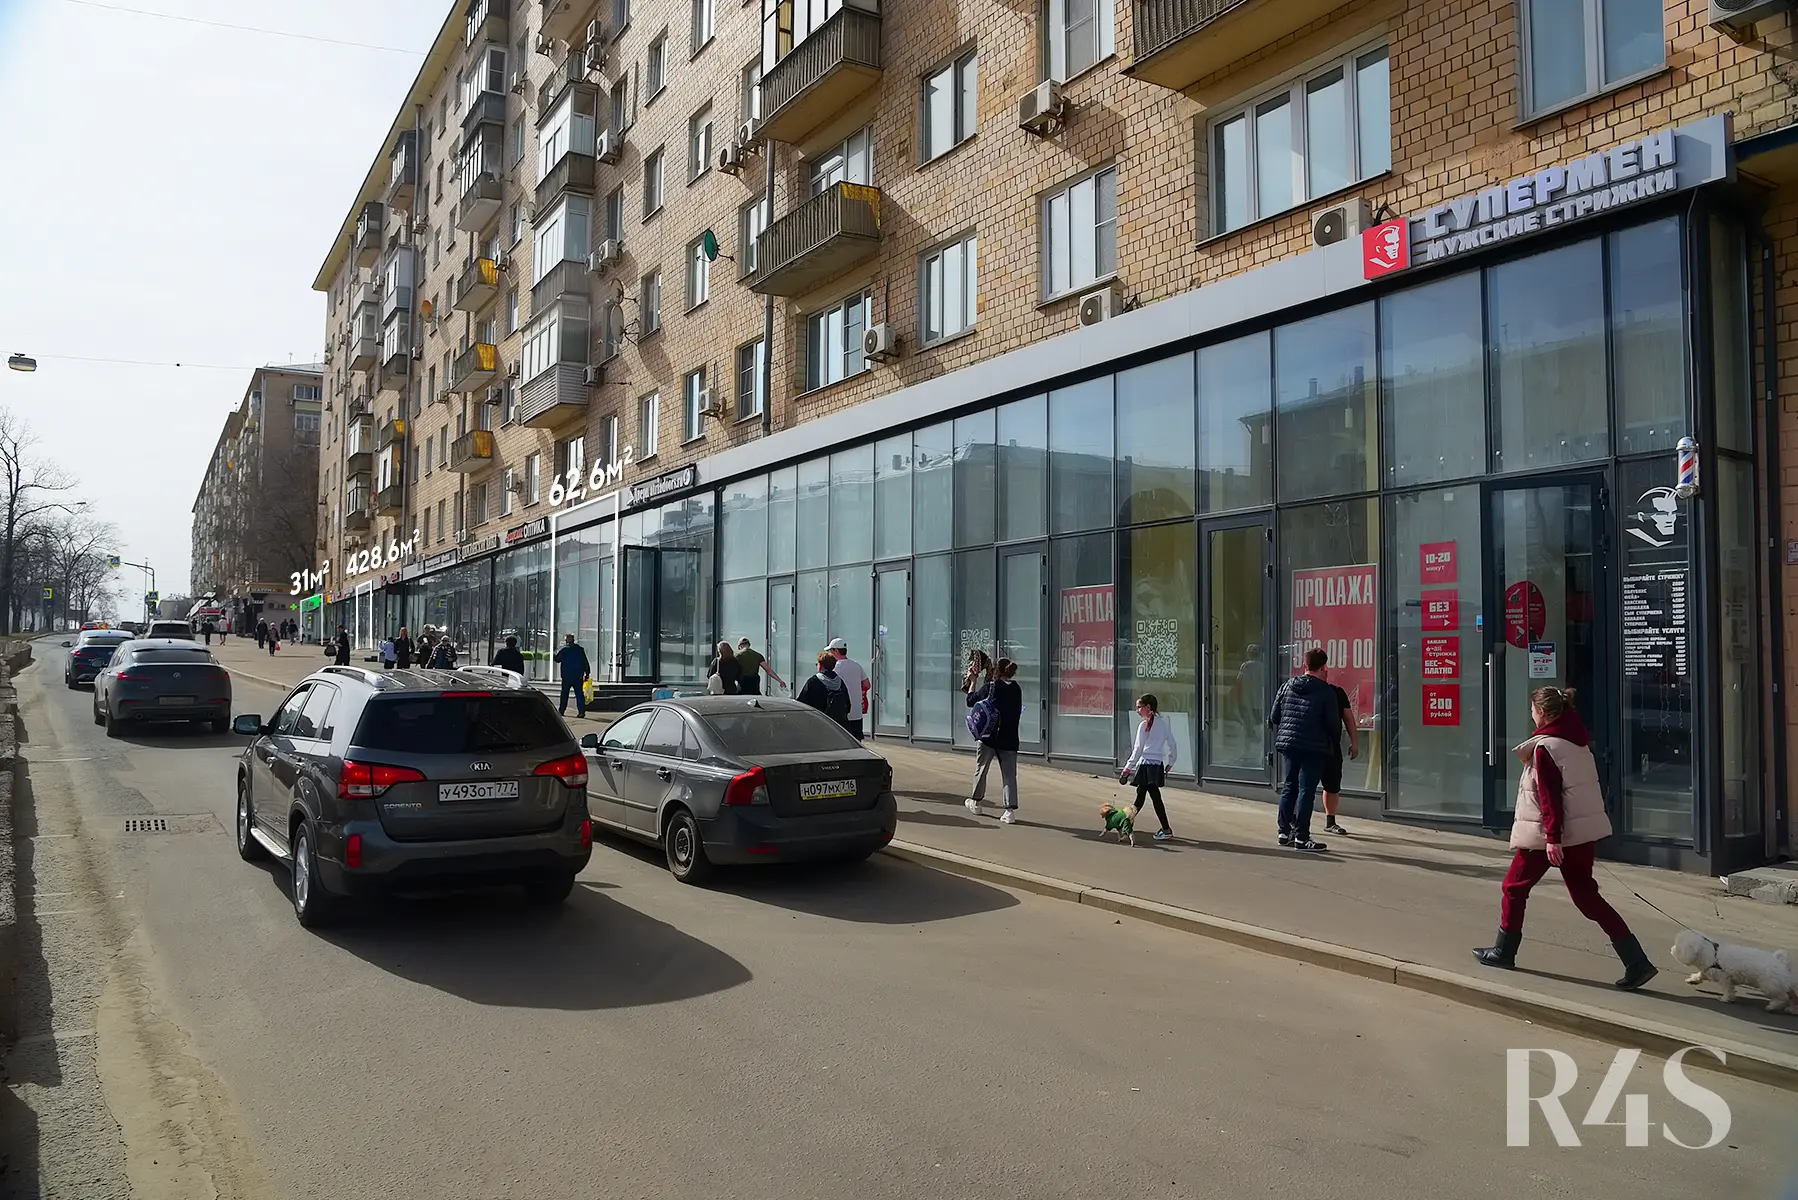 Продажа торговых помещений площадью 31 - 428.6 м2 в Москве:  Ленинский проспект, 78 R4S | Realty4Sale